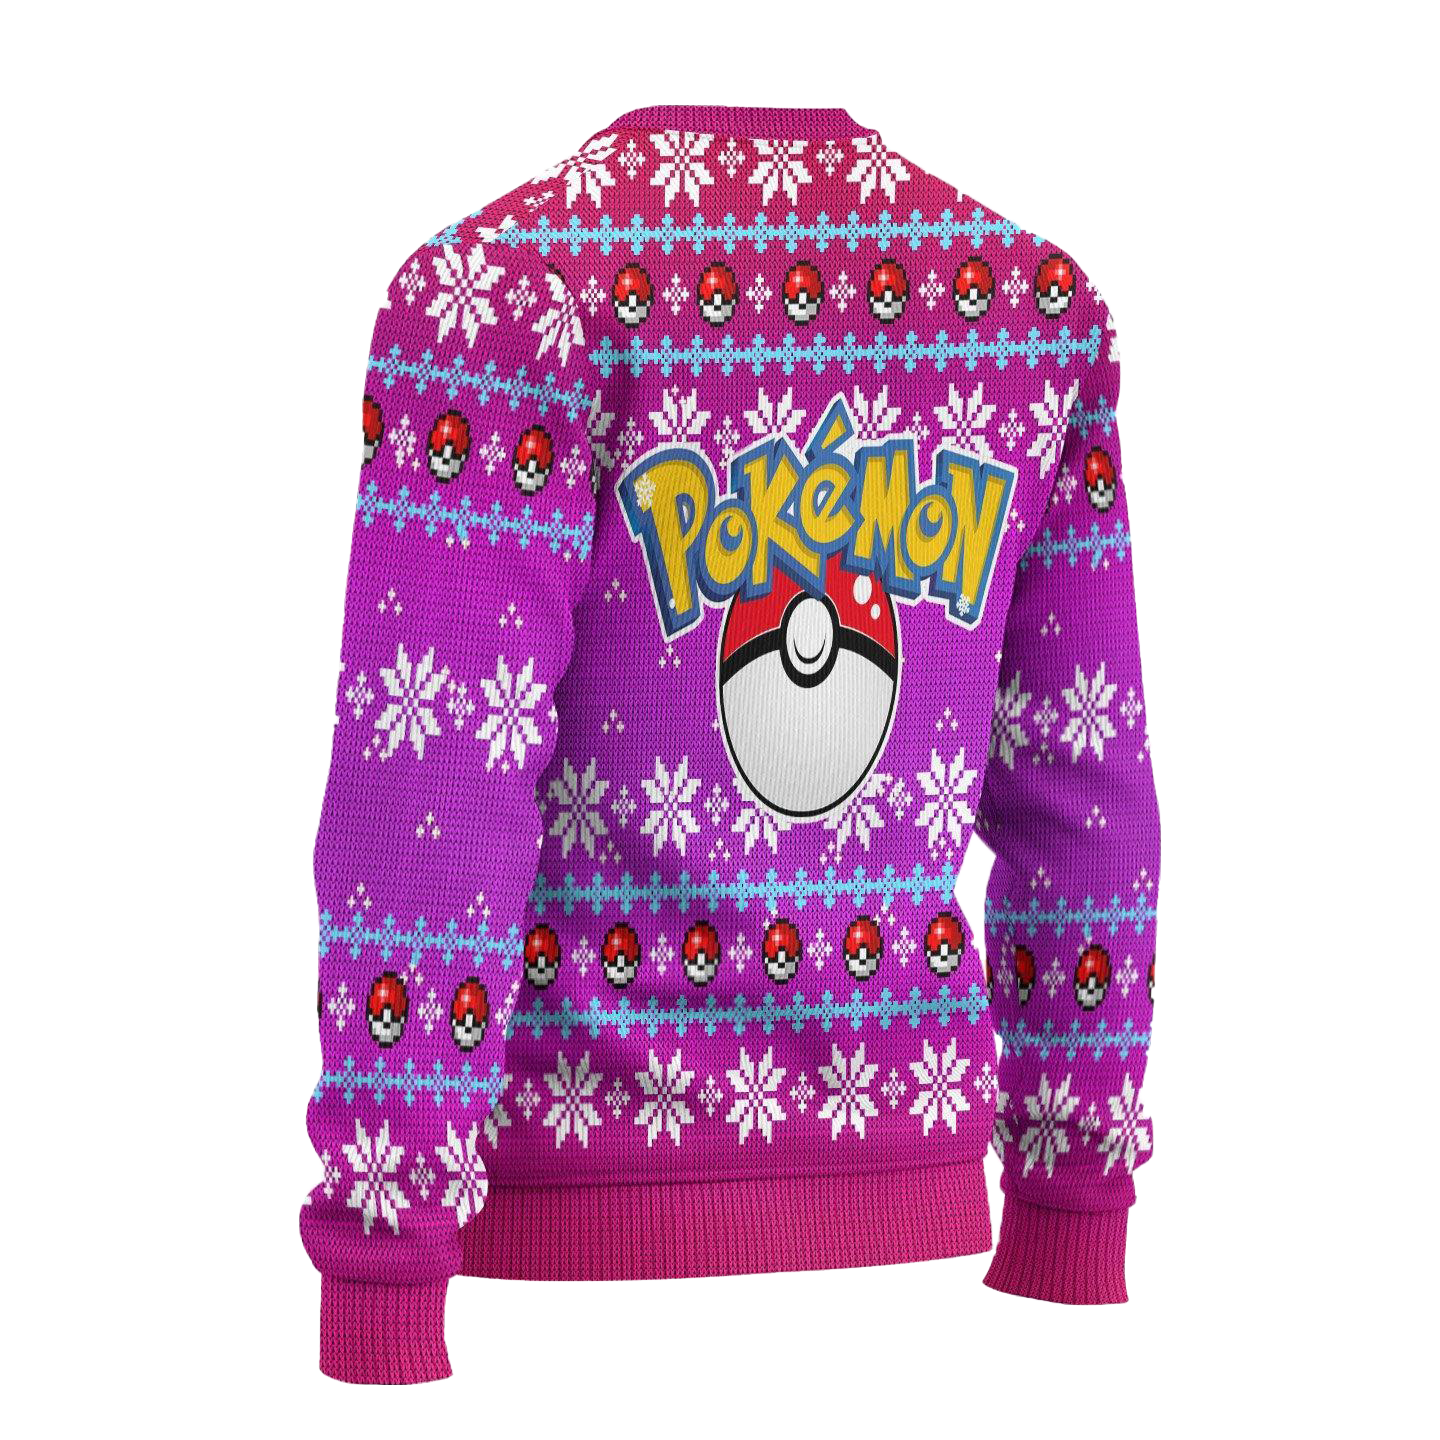 Pokemon Sylveon Anime Ugly Christmas Sweater Xmas Gift